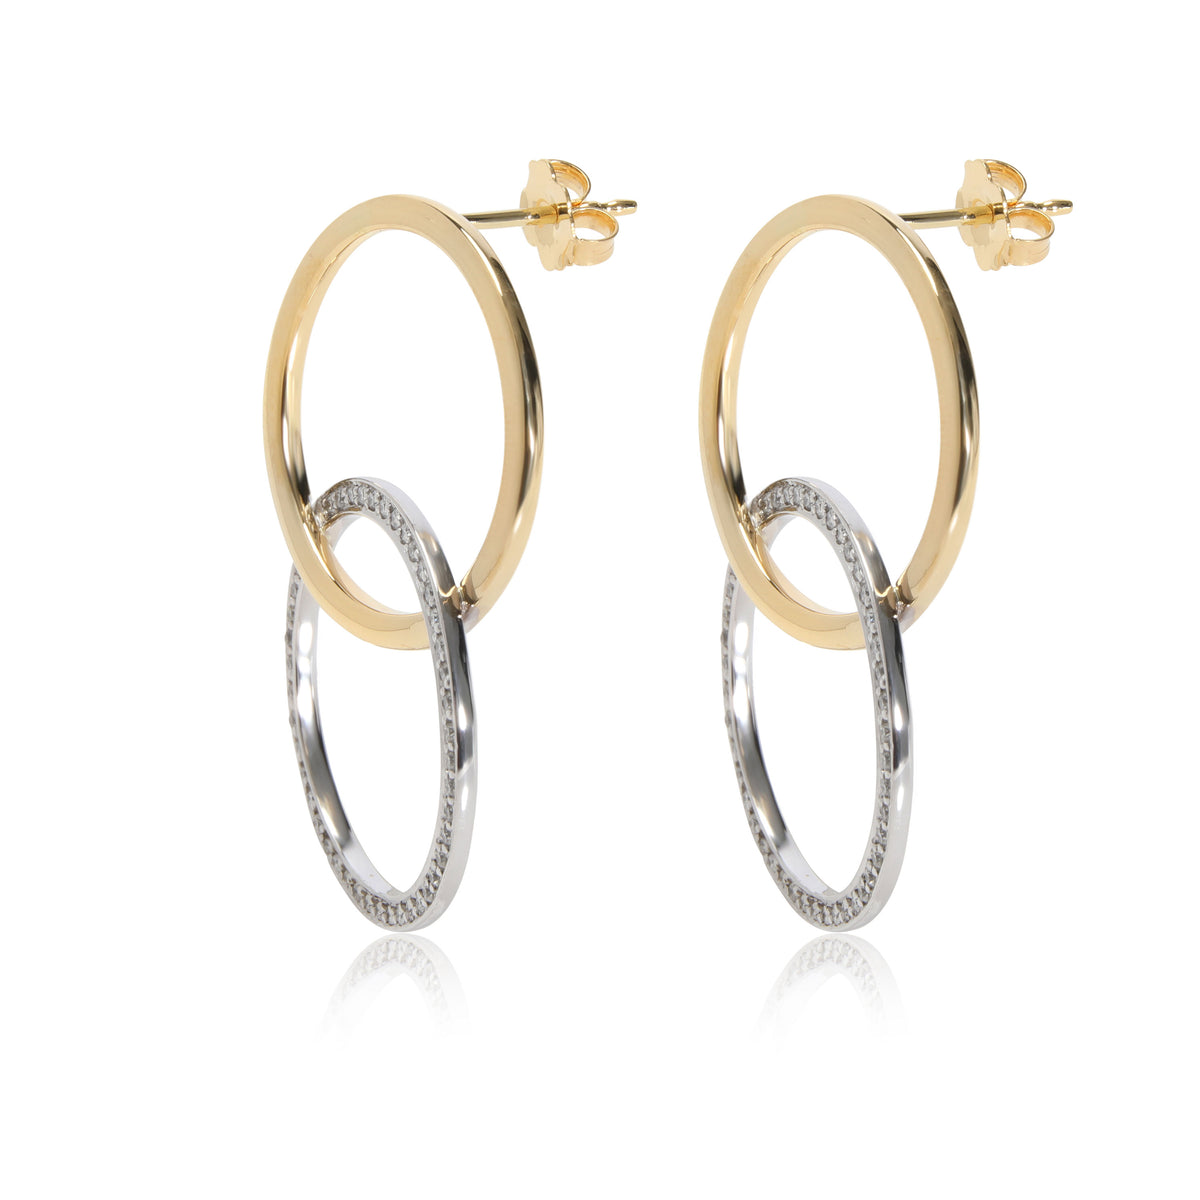 Diamond Interlocking Earrings in 18K 2 Tone Gold 0.90 CTW